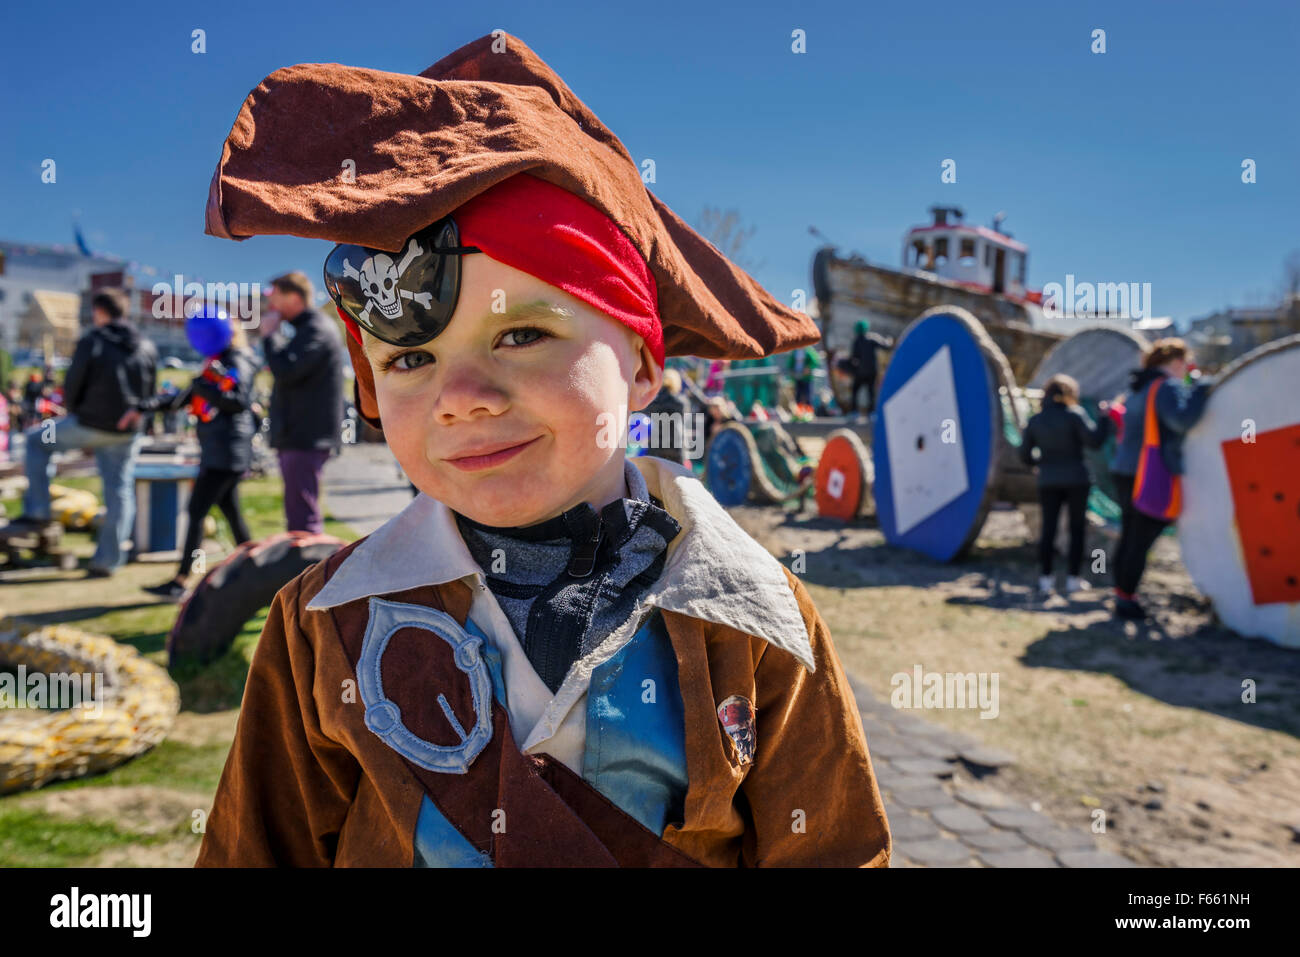 Junge in Piraten-Kostüm gekleidet, während der jährlichen Seemann-Tages-Festival in Reykjavik, Island Stockfoto